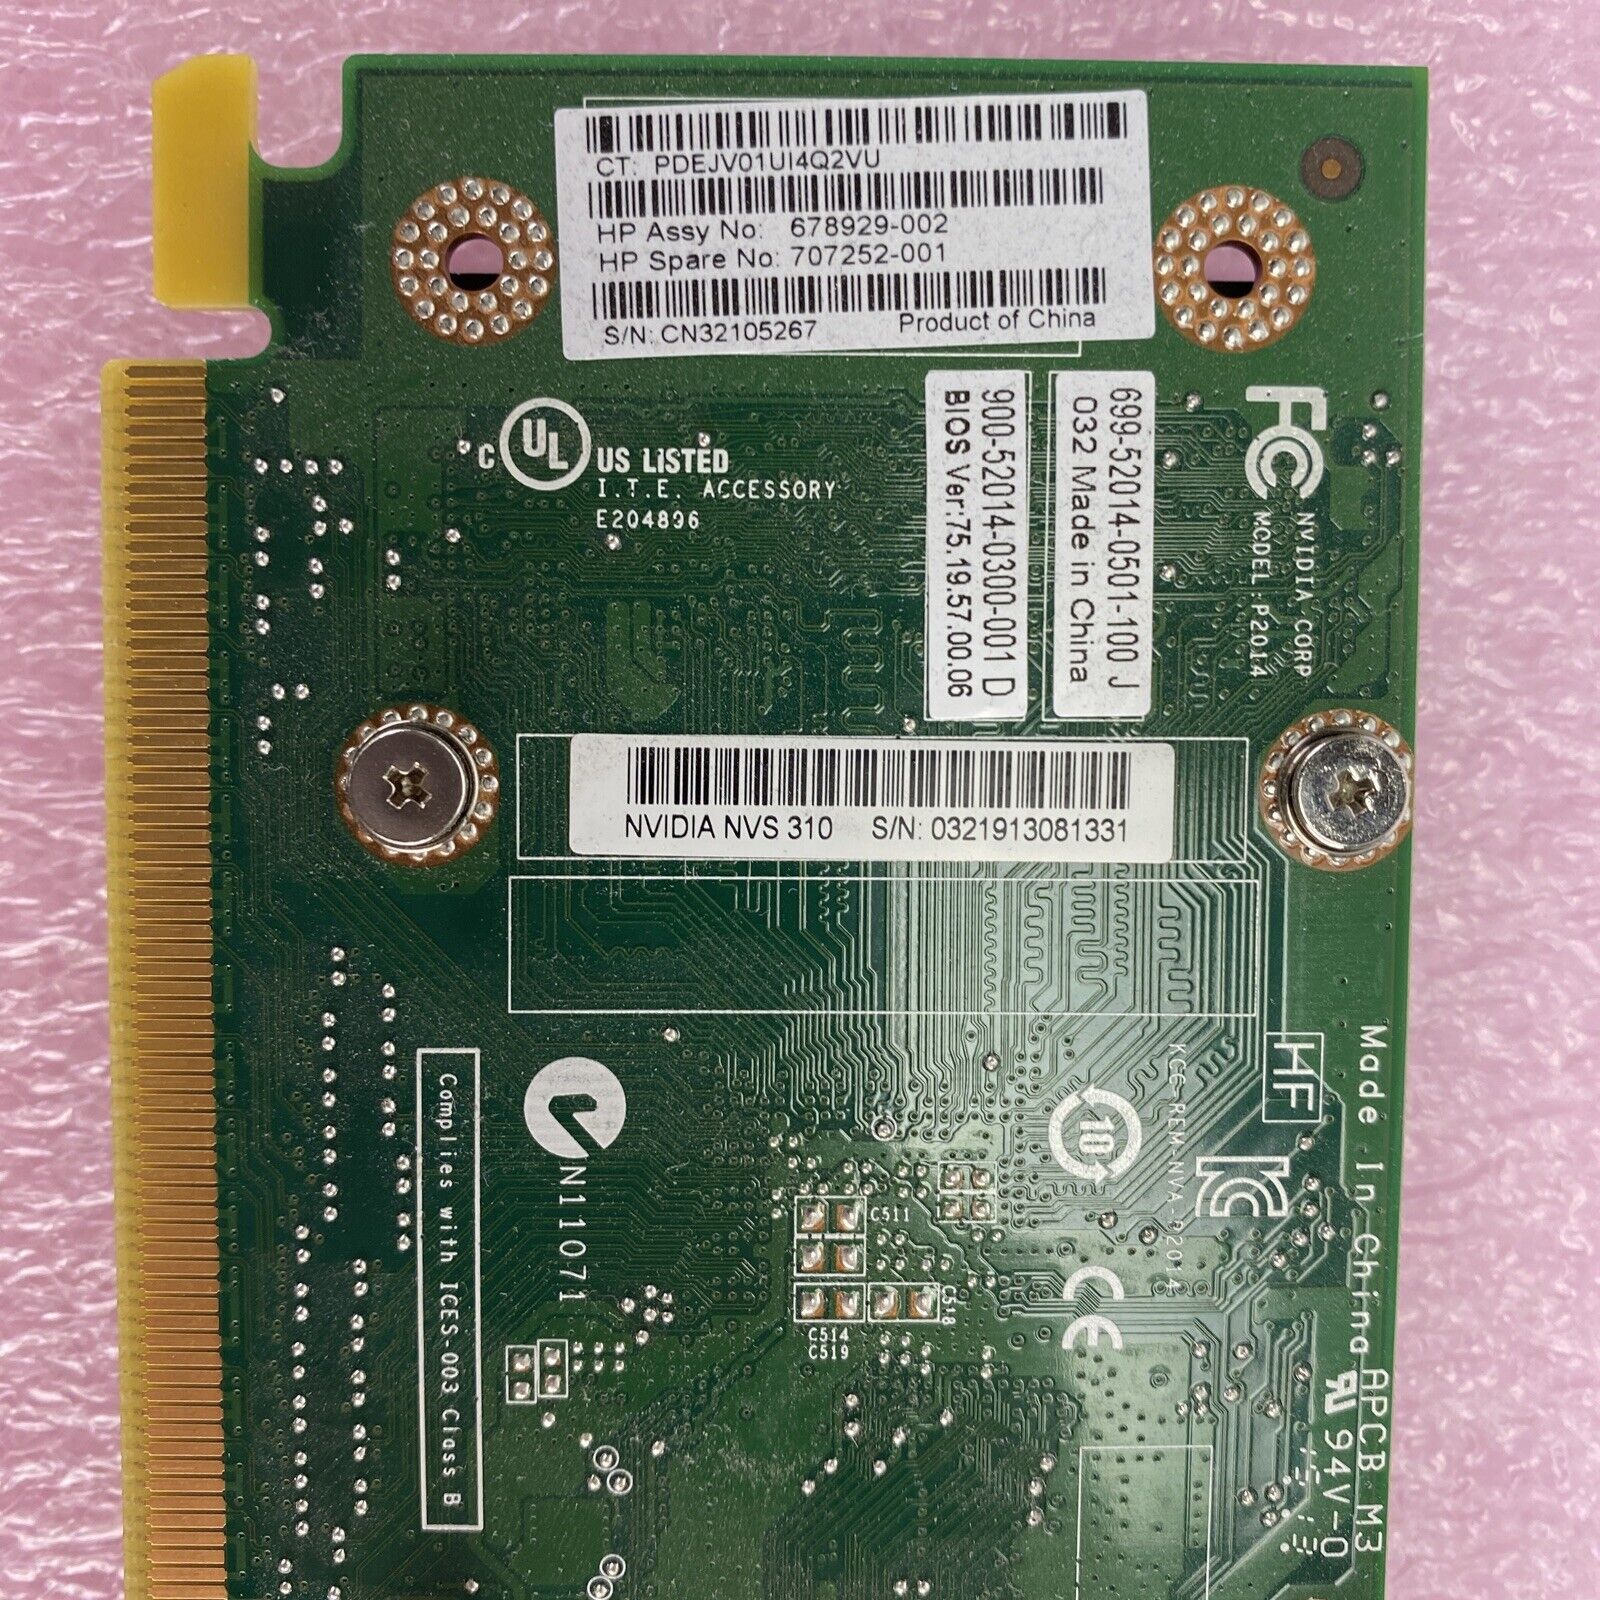 HP 678929-002 Nvidia NVS 310 512MB GDDR3 2xDP Full Profile